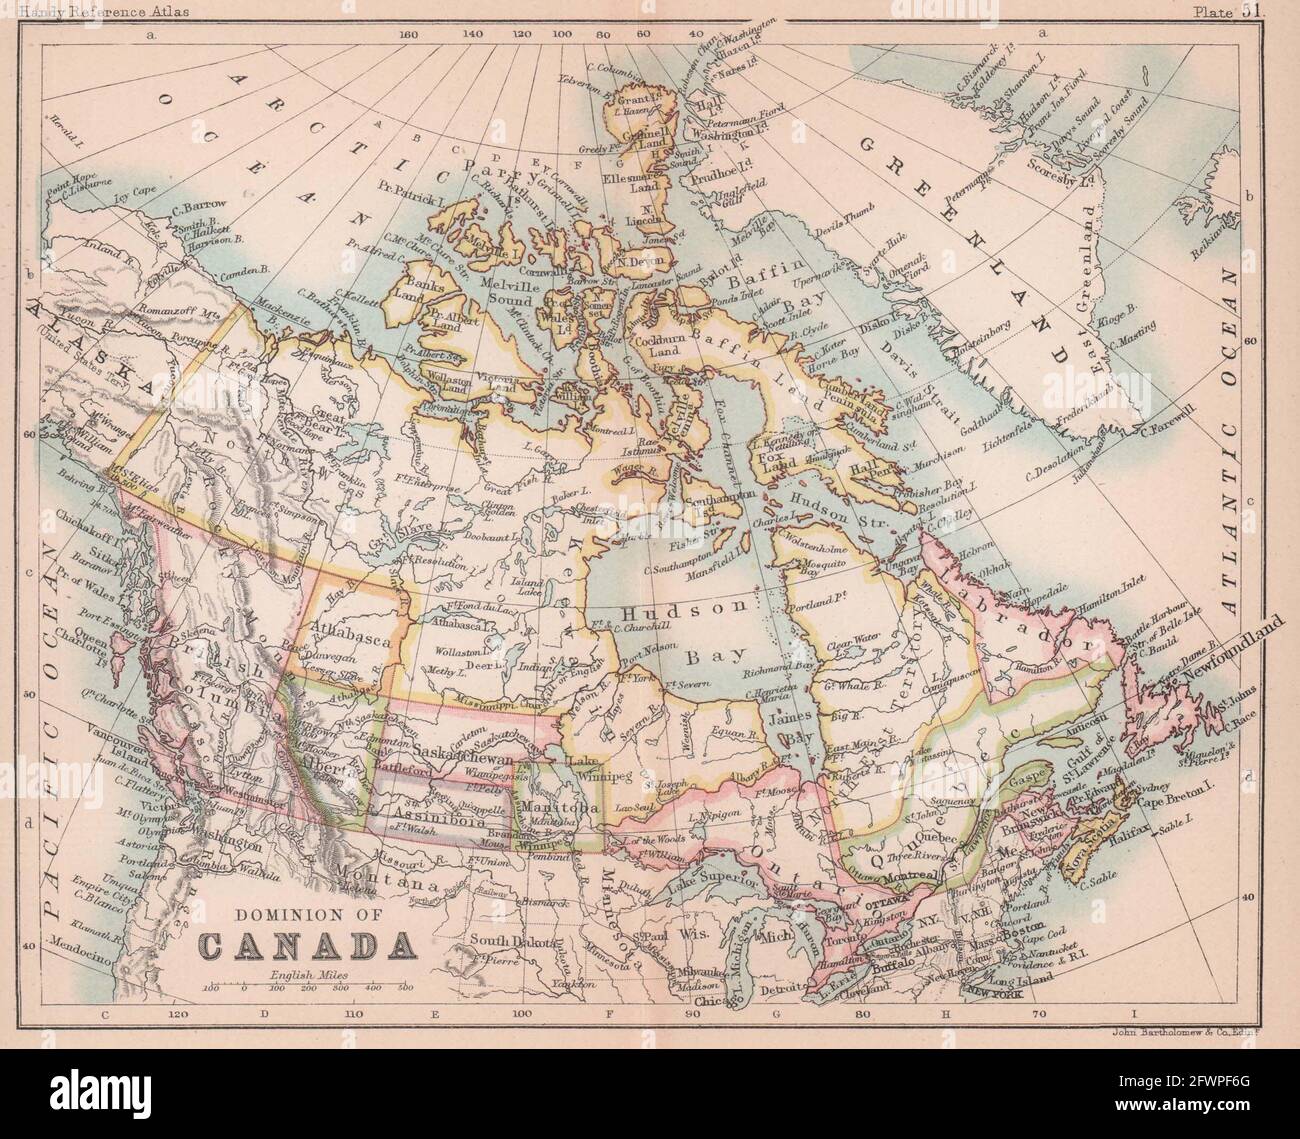 Dominion of Canada. Manitoba postage stamp. Athabasca. BARTHOLOMEW 1893 map Stock Photo